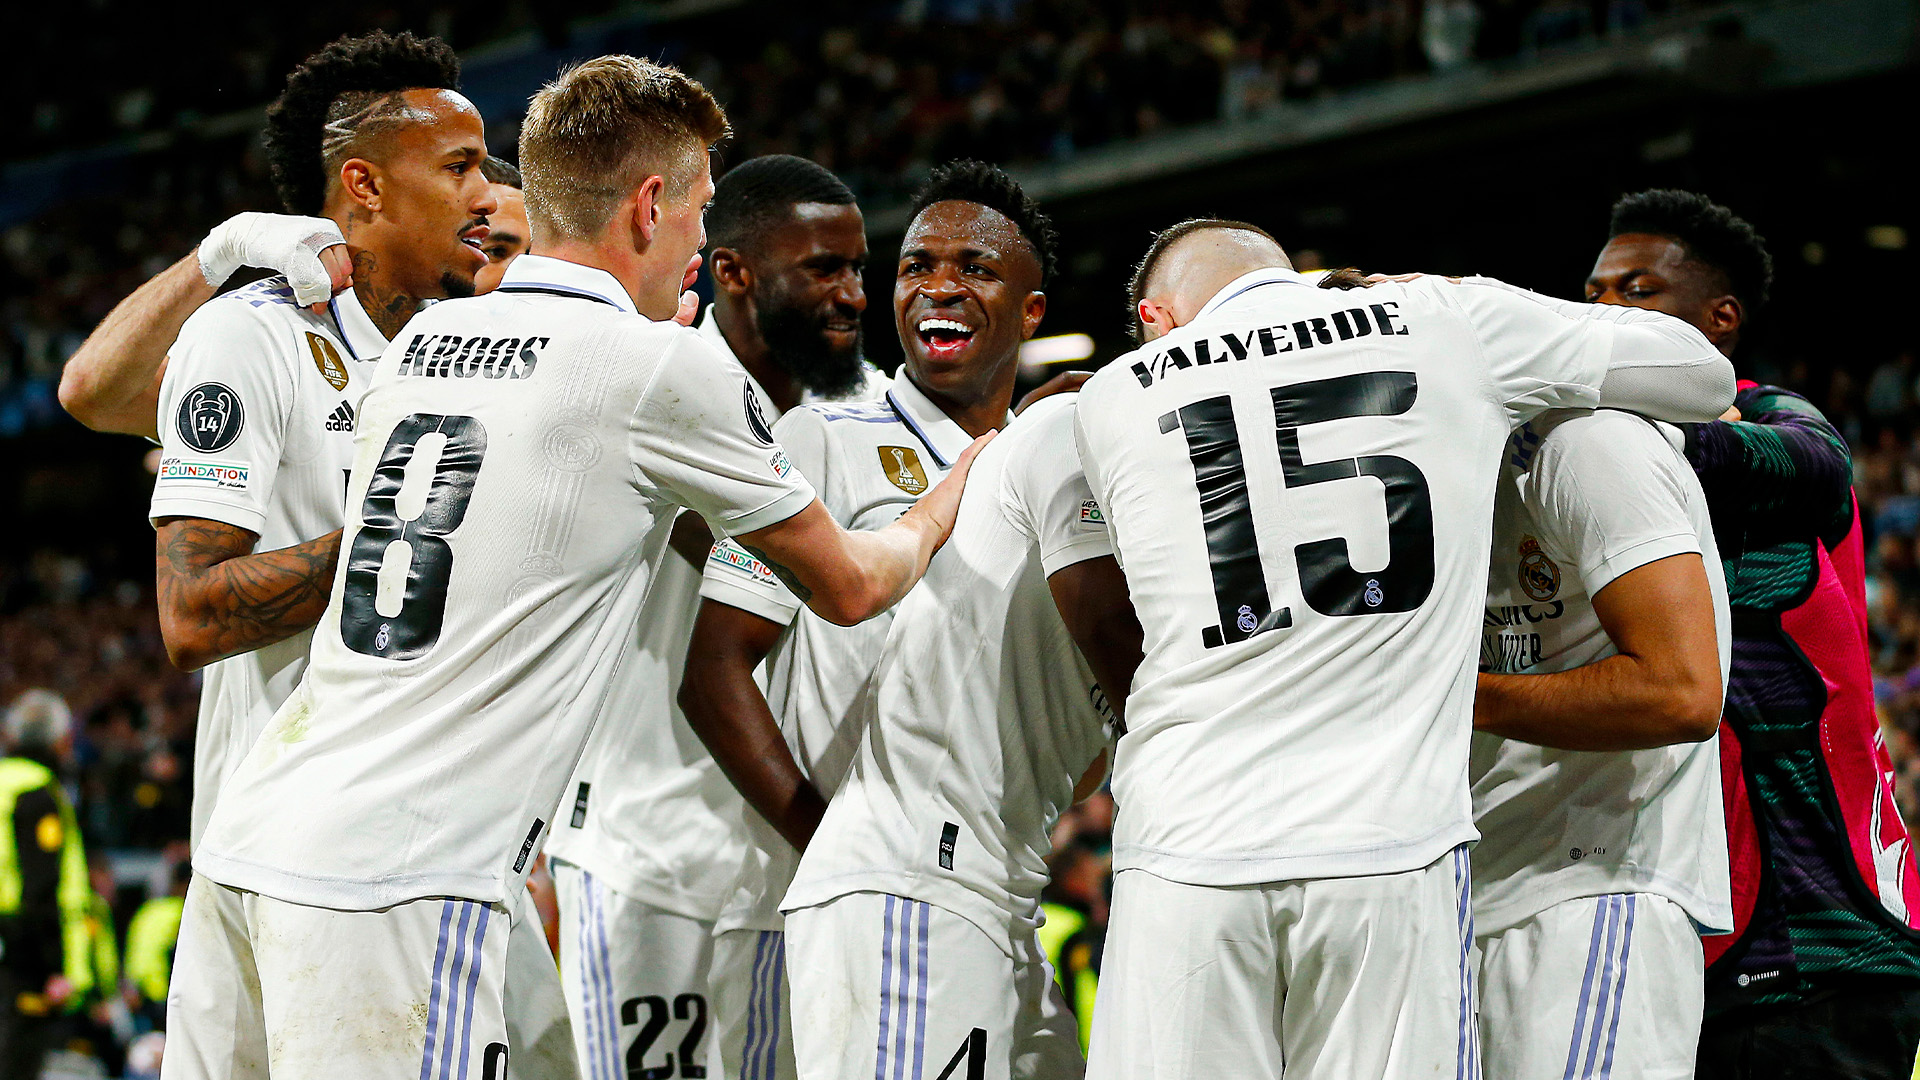 Real Madrid saca al Chelsea cómoda ventaja en el Bernabéu